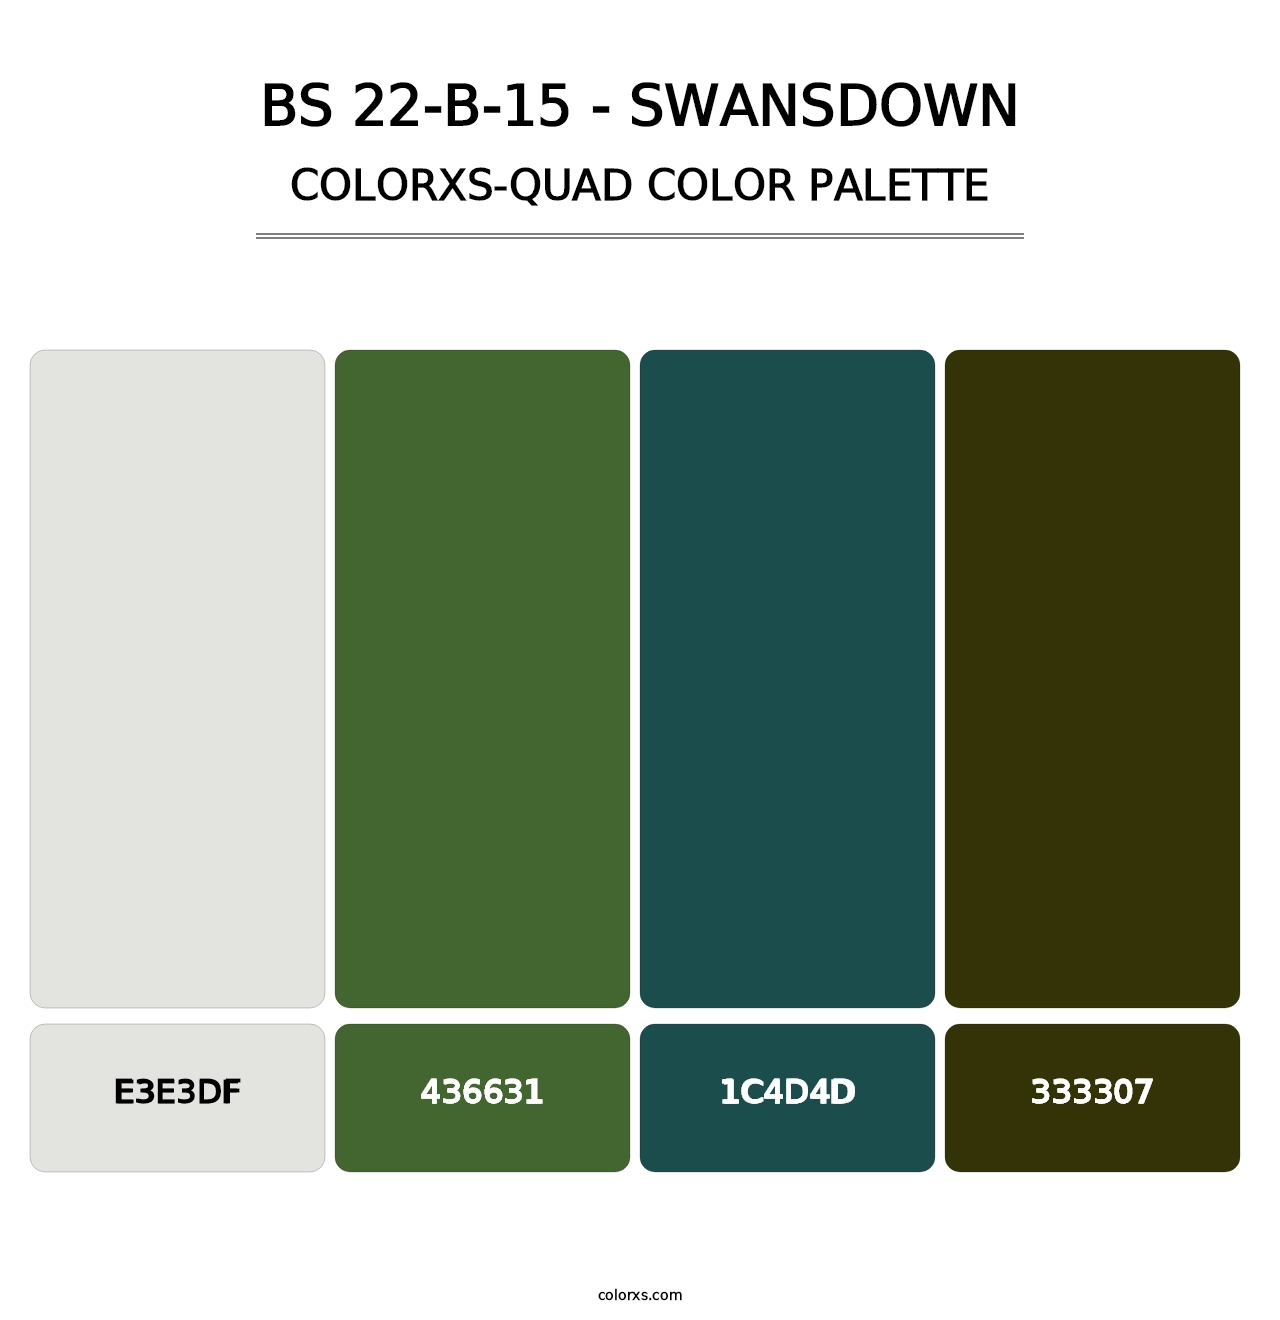 BS 22-B-15 - Swansdown - Colorxs Quad Palette